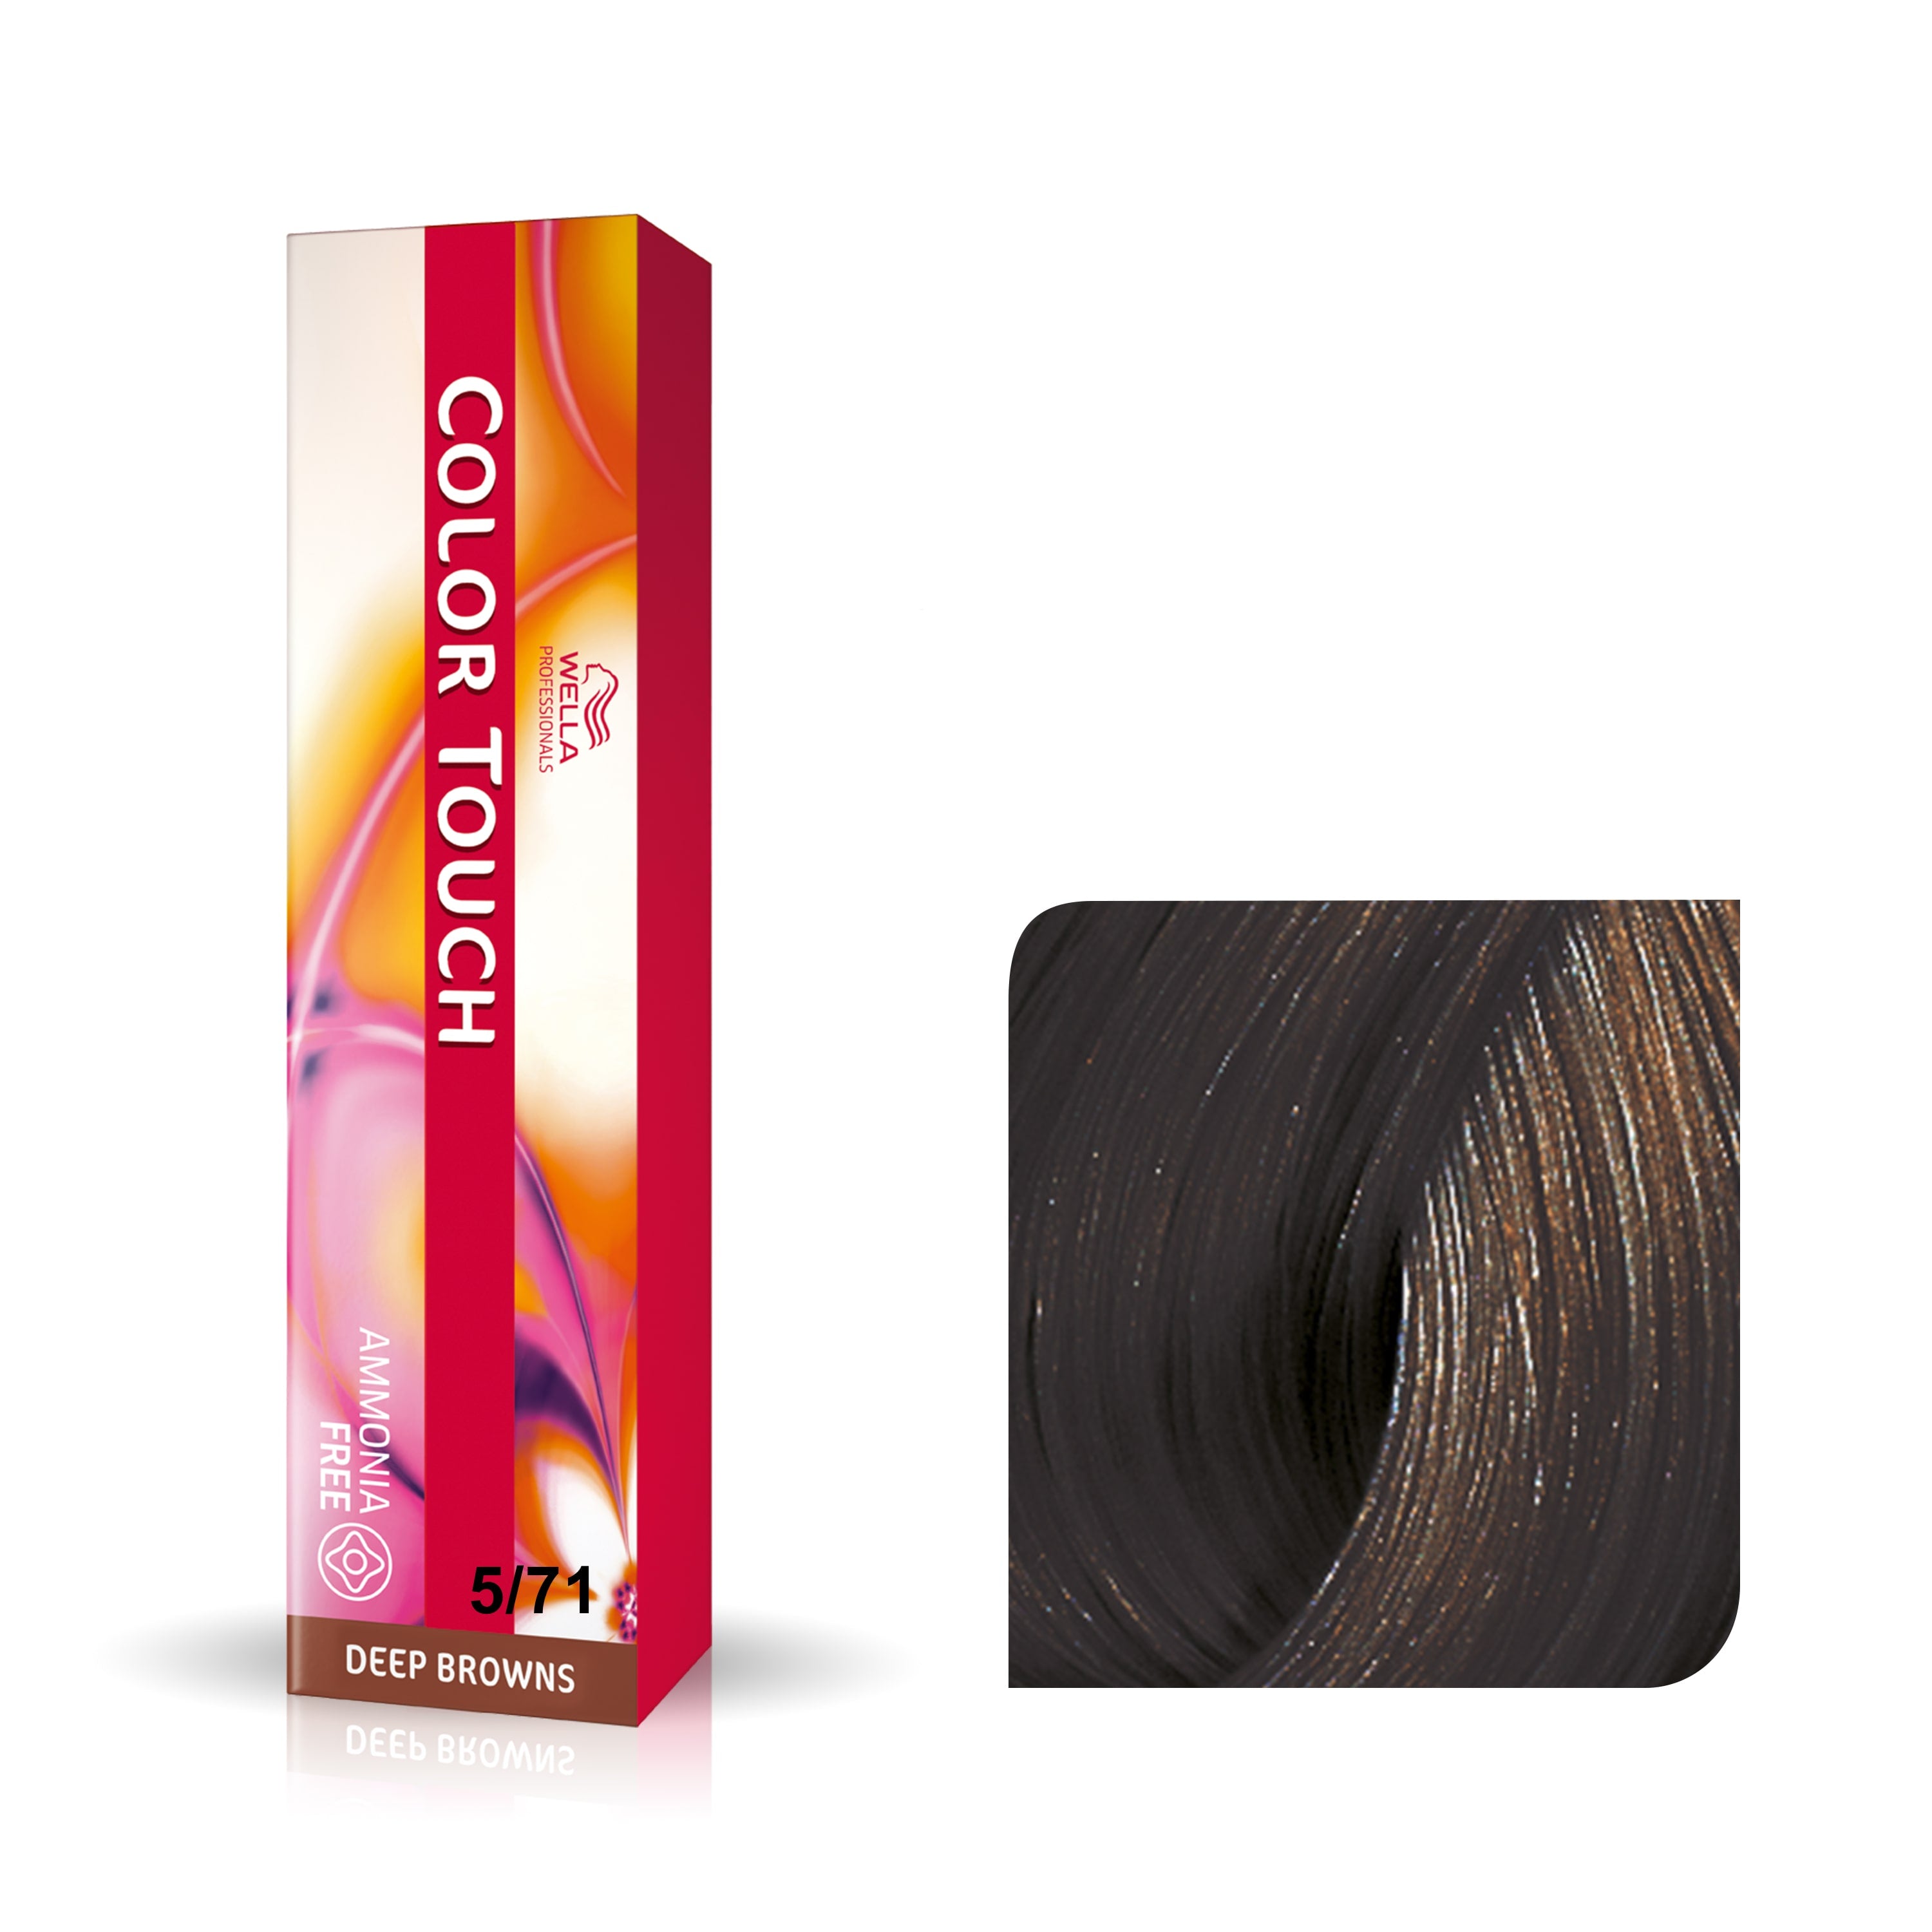 a box of hair dye next to a box of hair dye